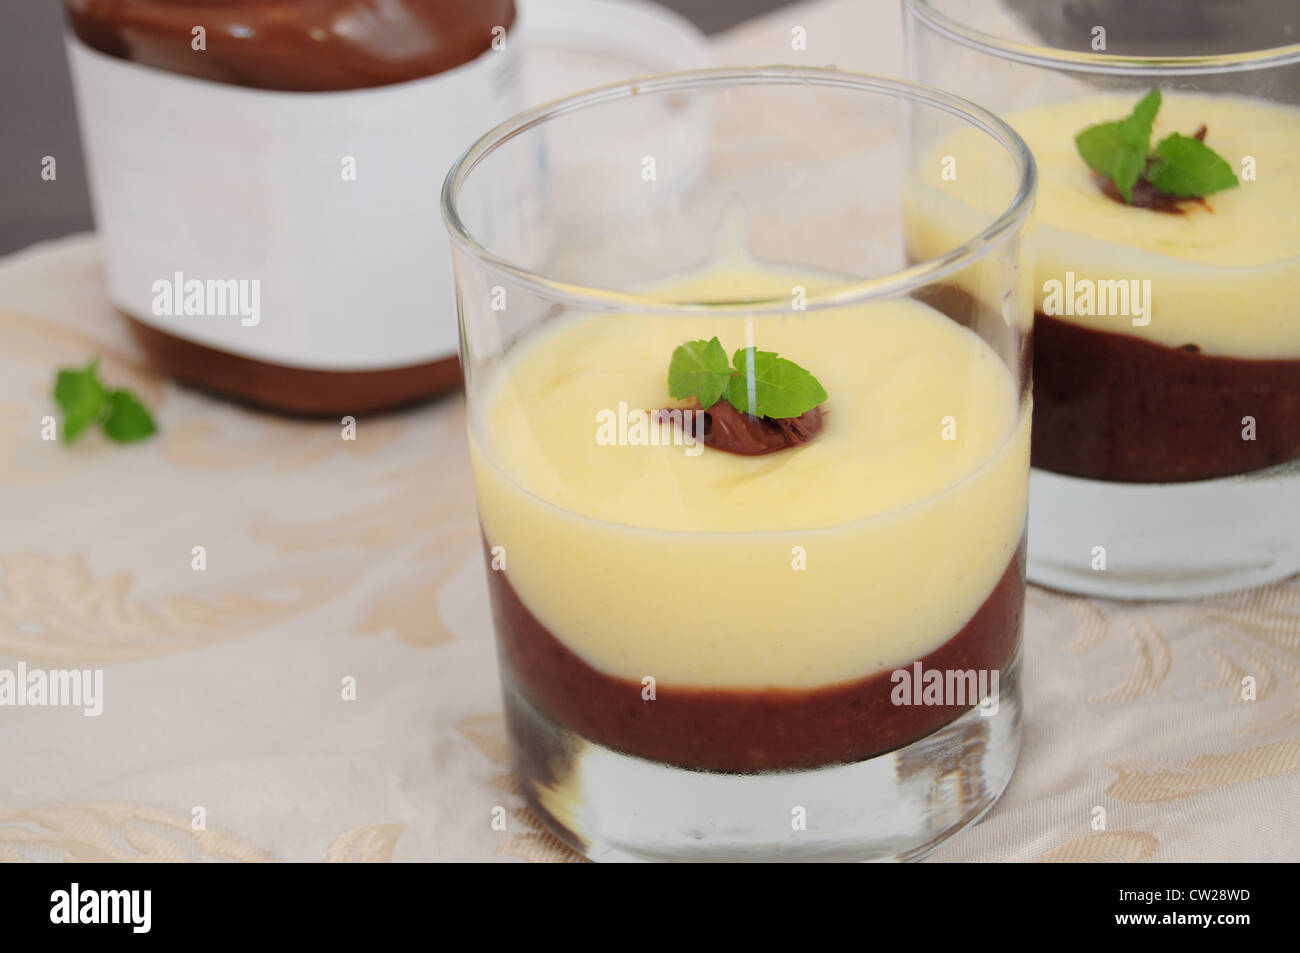 Chocolat et crème vanille, servi dans des verres, décorés de feuilles de menthe Banque D'Images